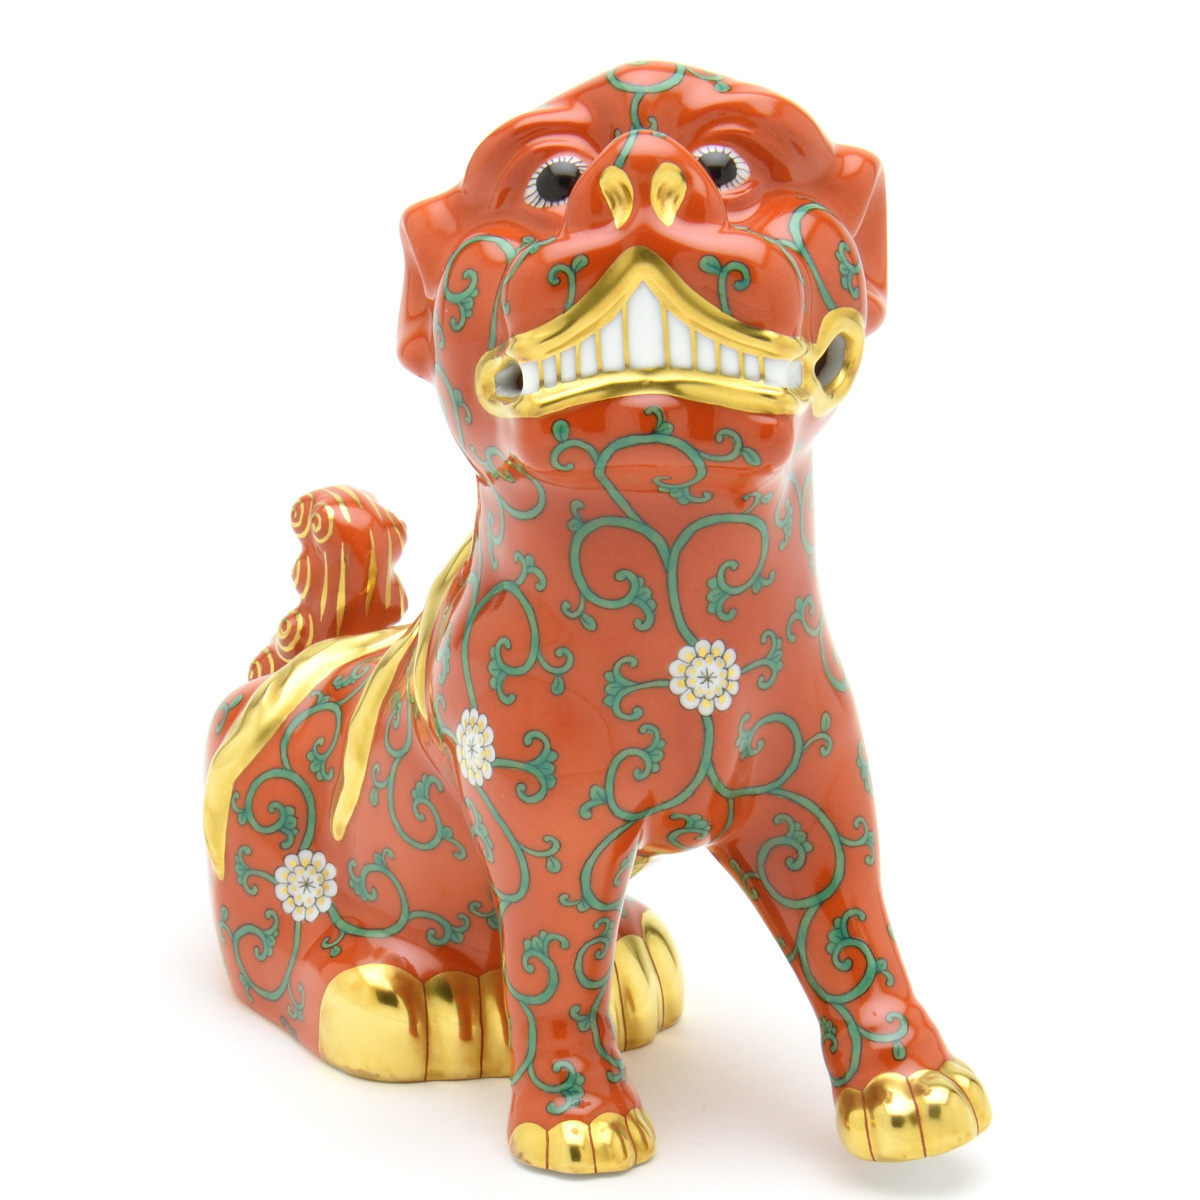 ヘレンド(Herend) 狛犬(ペア) 西安の赤 こまいぬ 手描き 磁器製 フィギュリン 置物 飾り物 ハンガリー製 新品_画像3